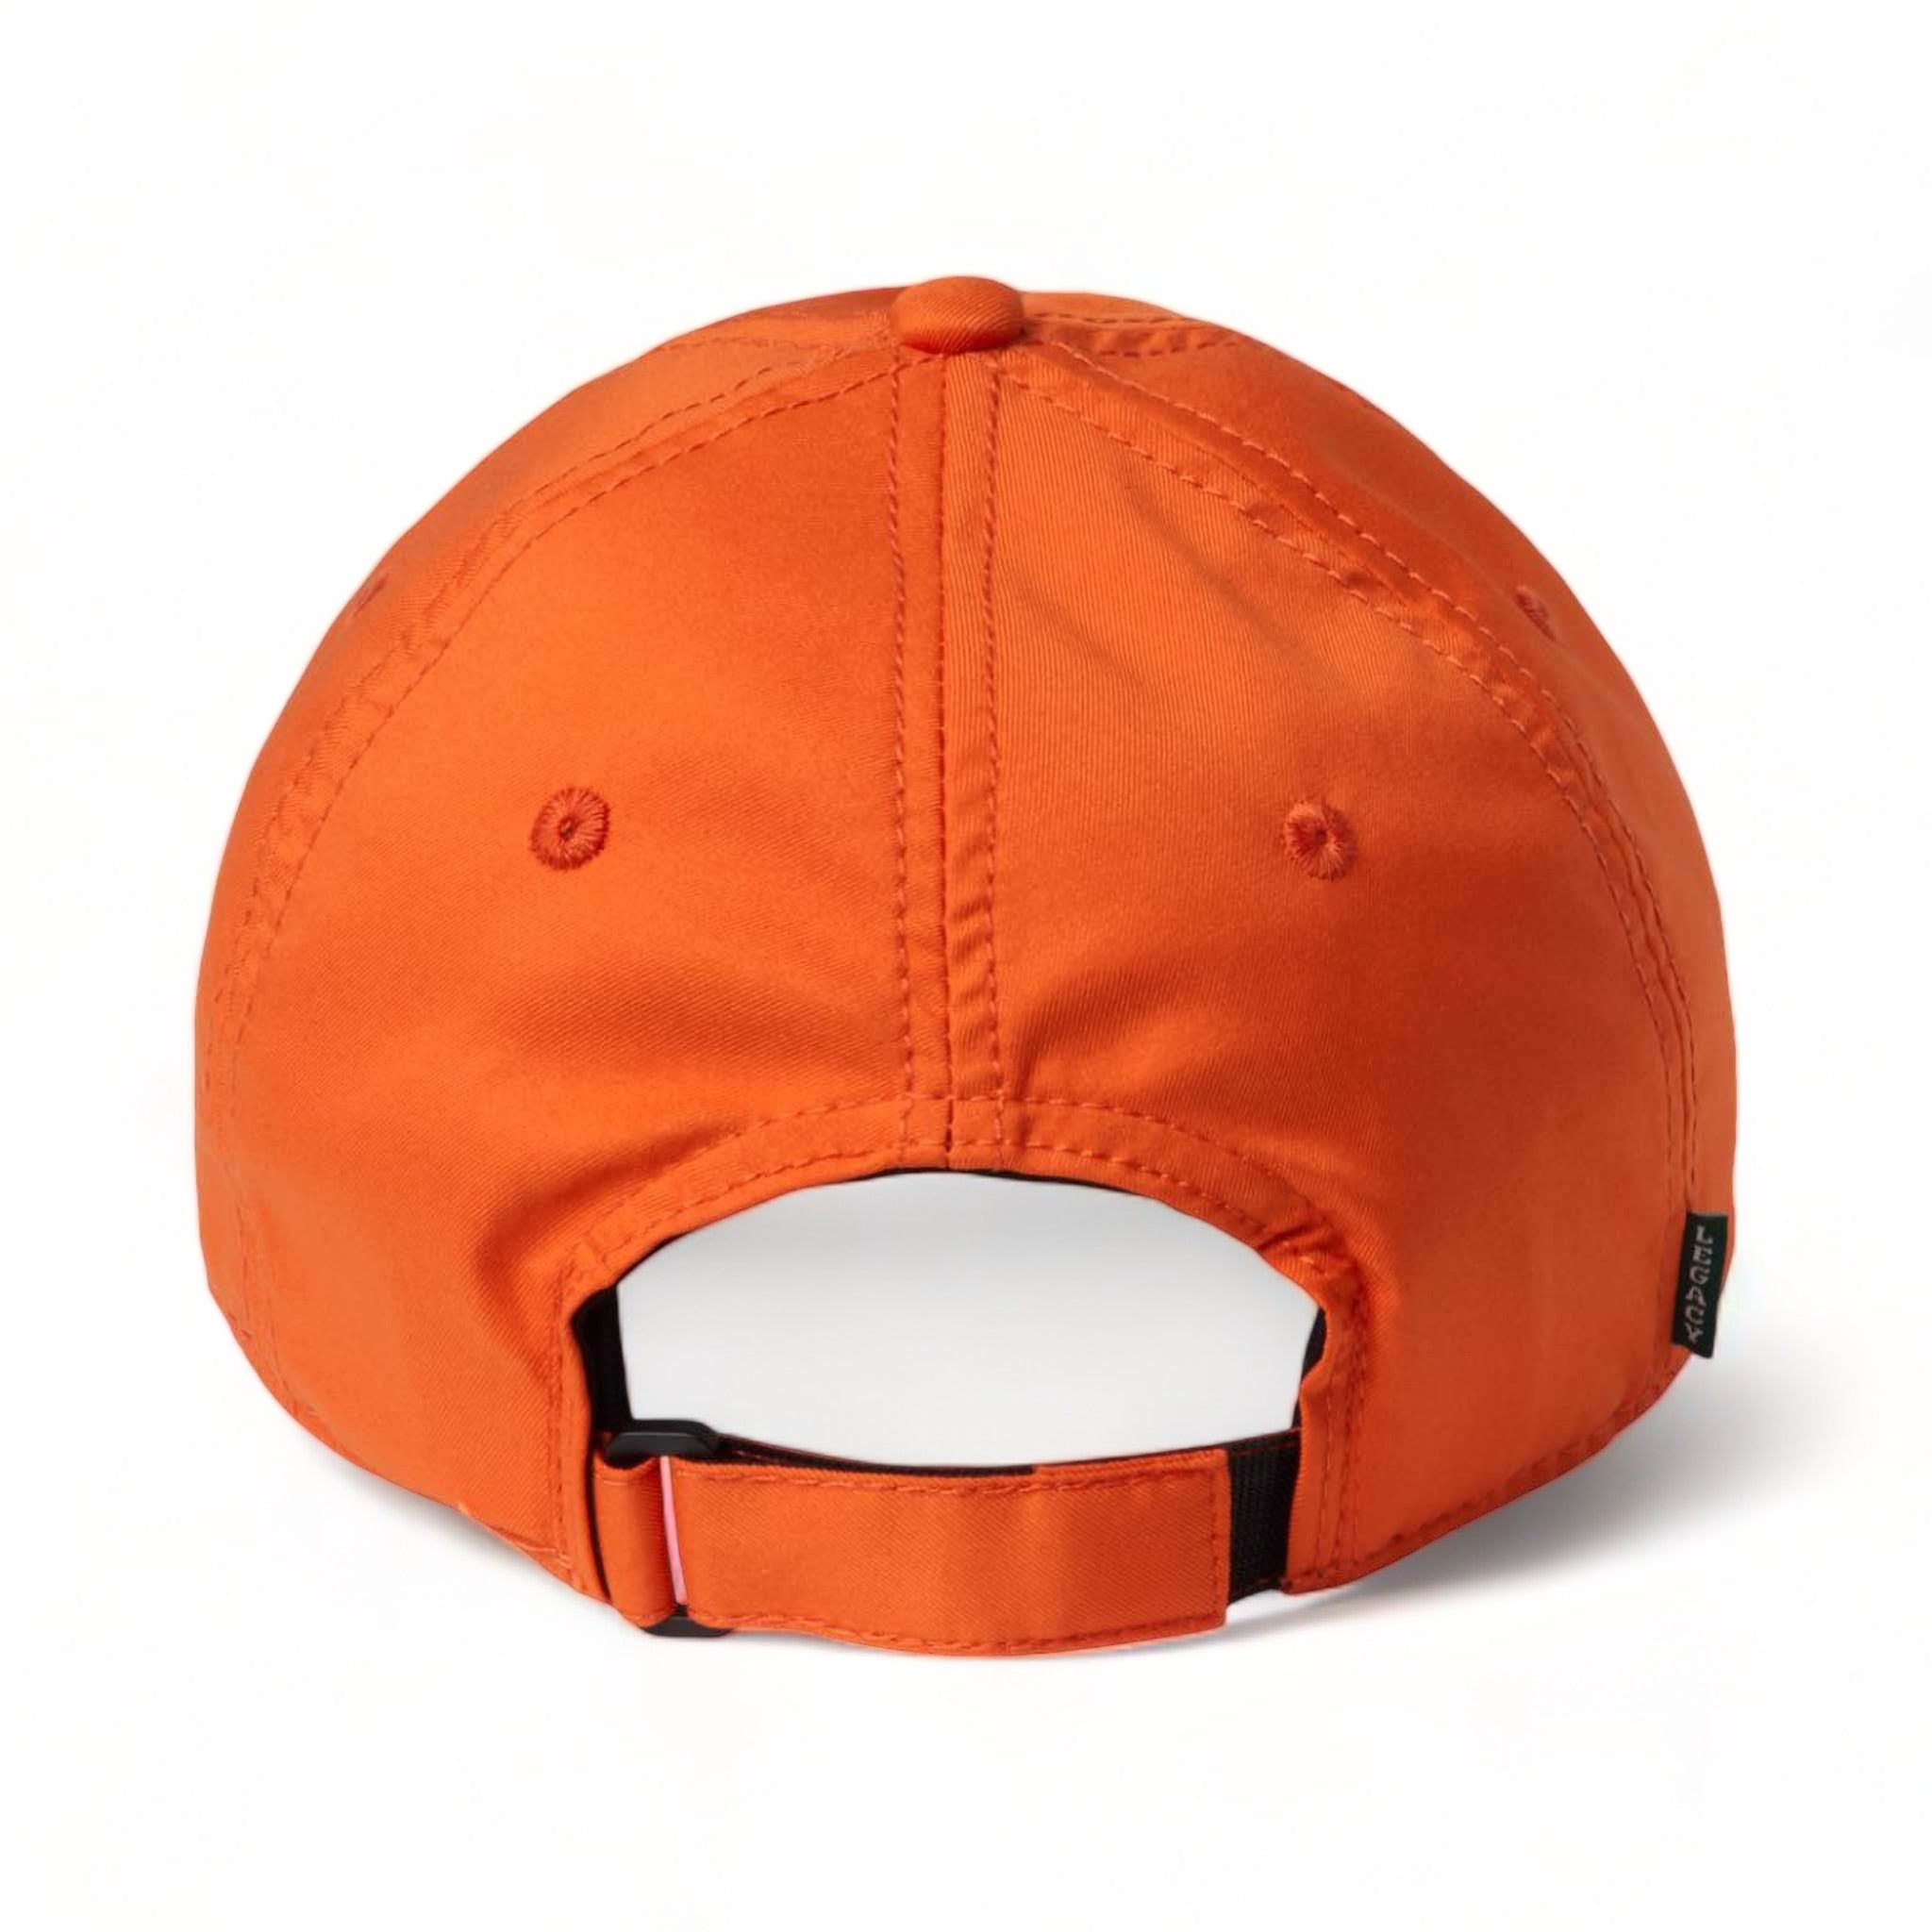 Back view of LEGACY CFA custom hat in orange